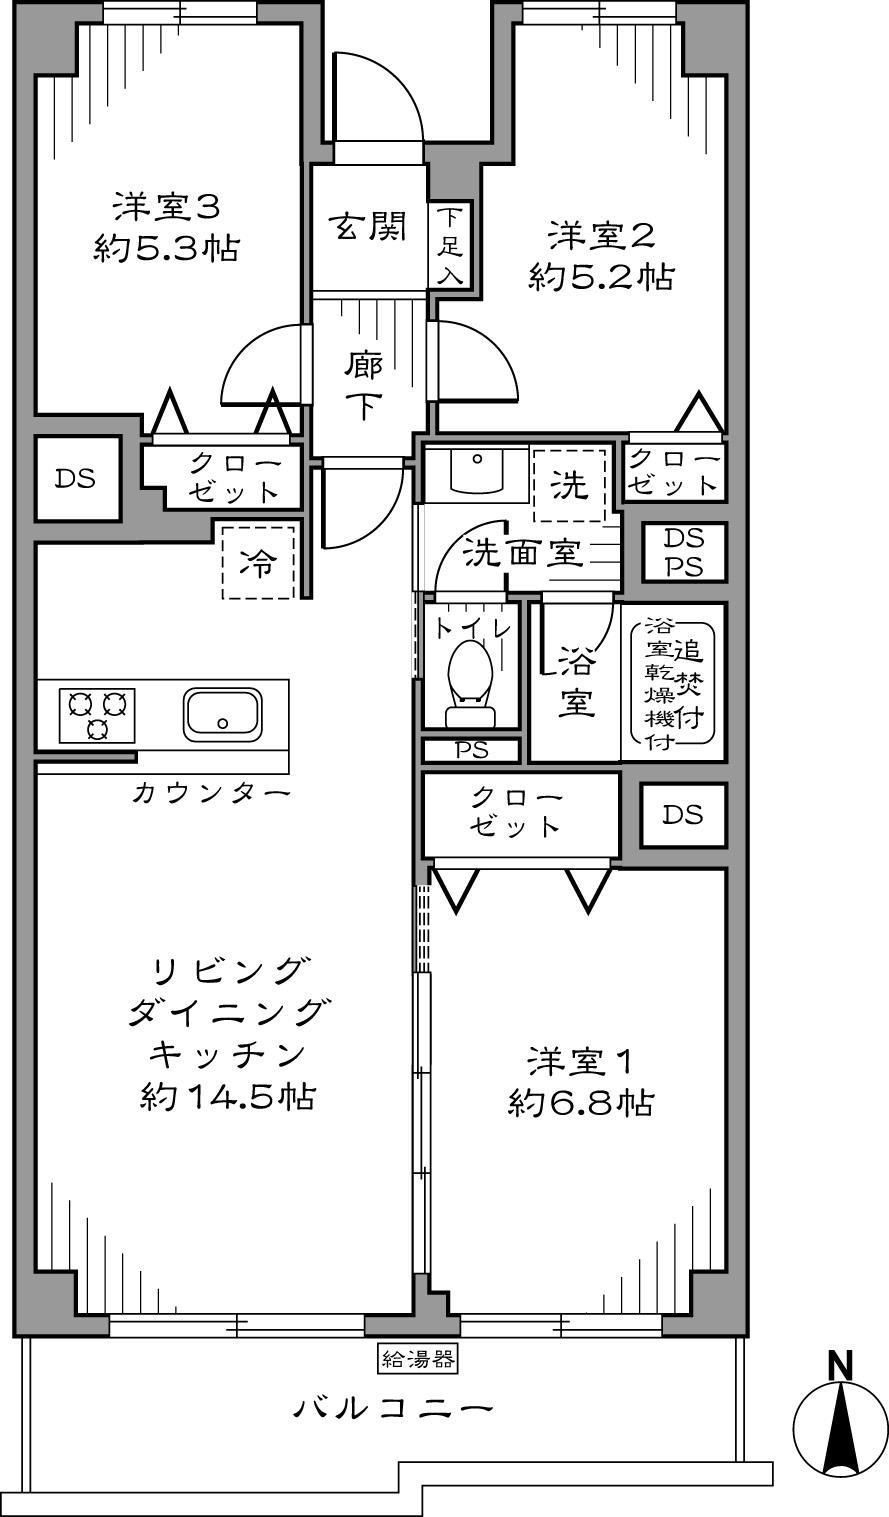 Floor plan. 3LDK 64.95 sq m